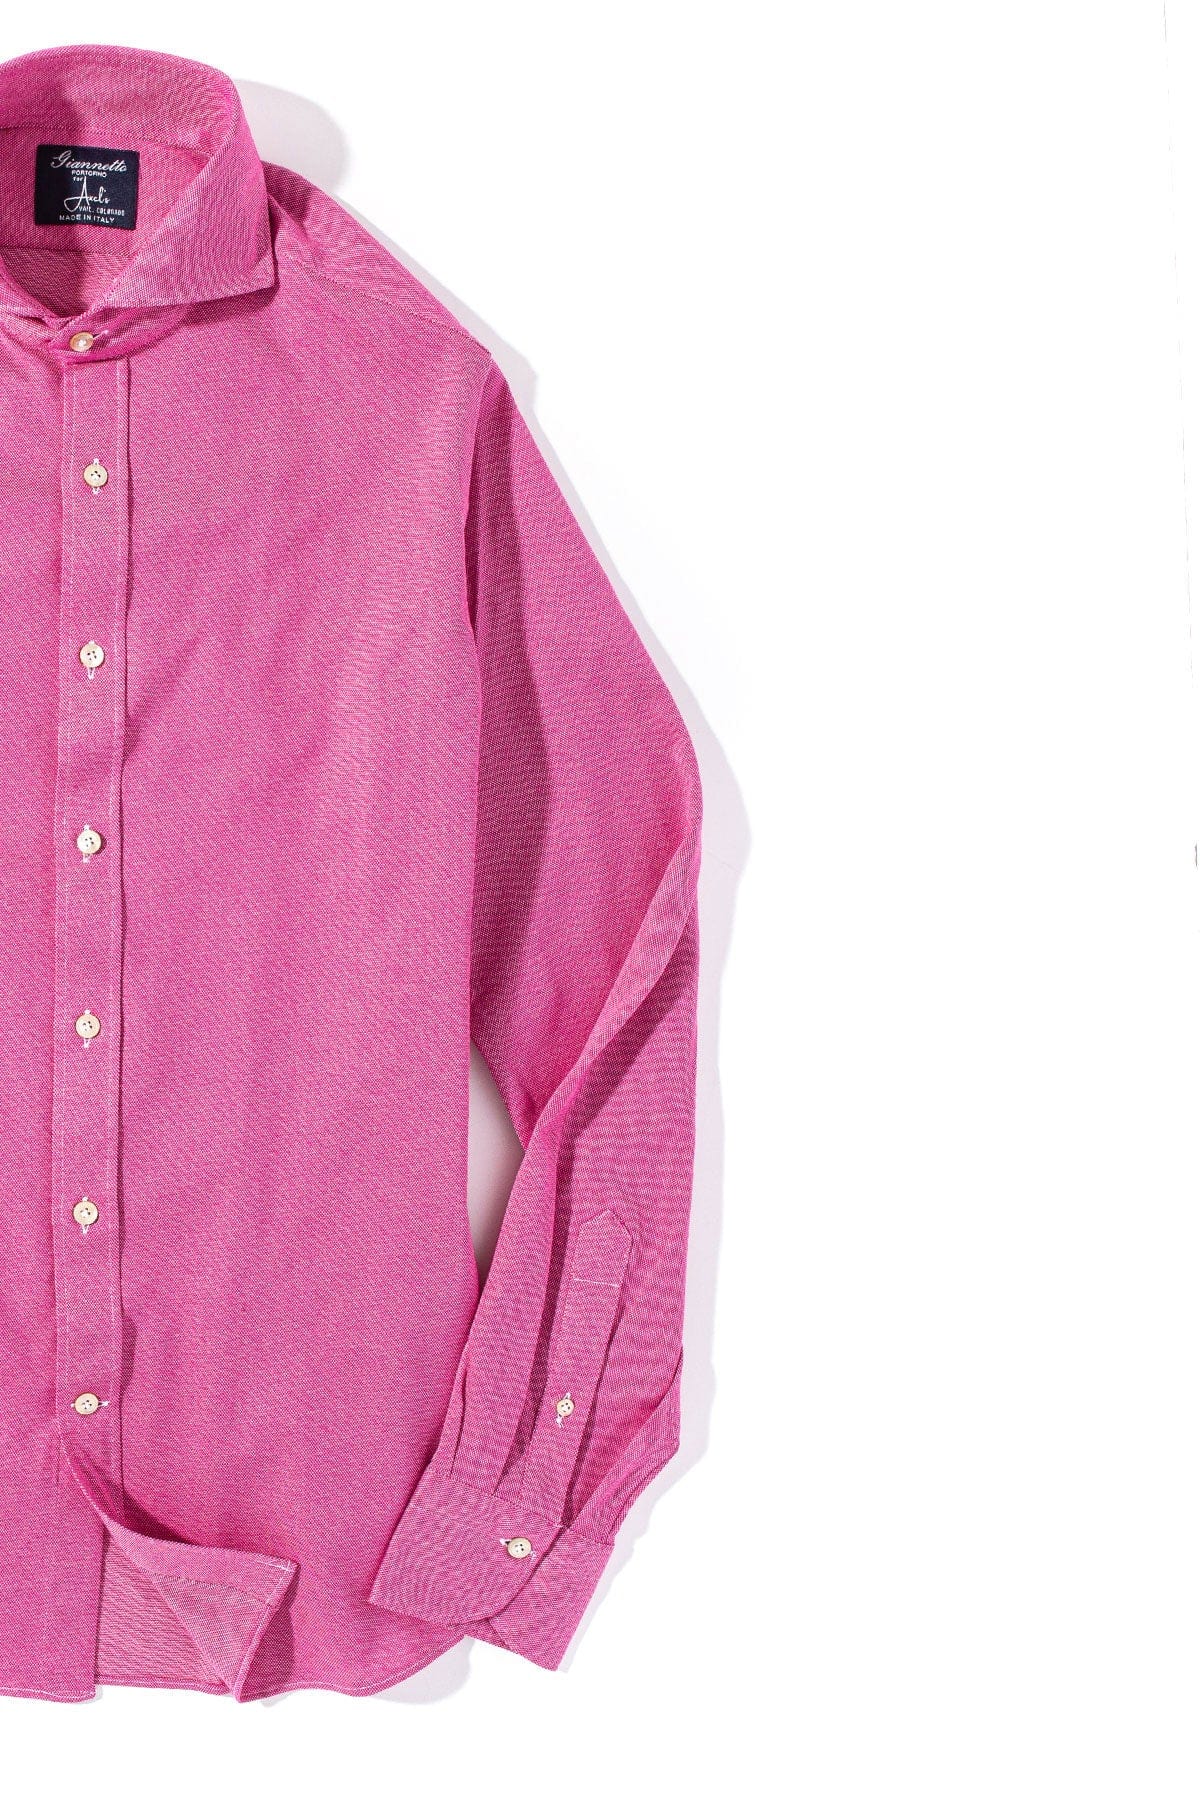 Menerbes Jersey Shirt in Fuchsia - AXEL'S